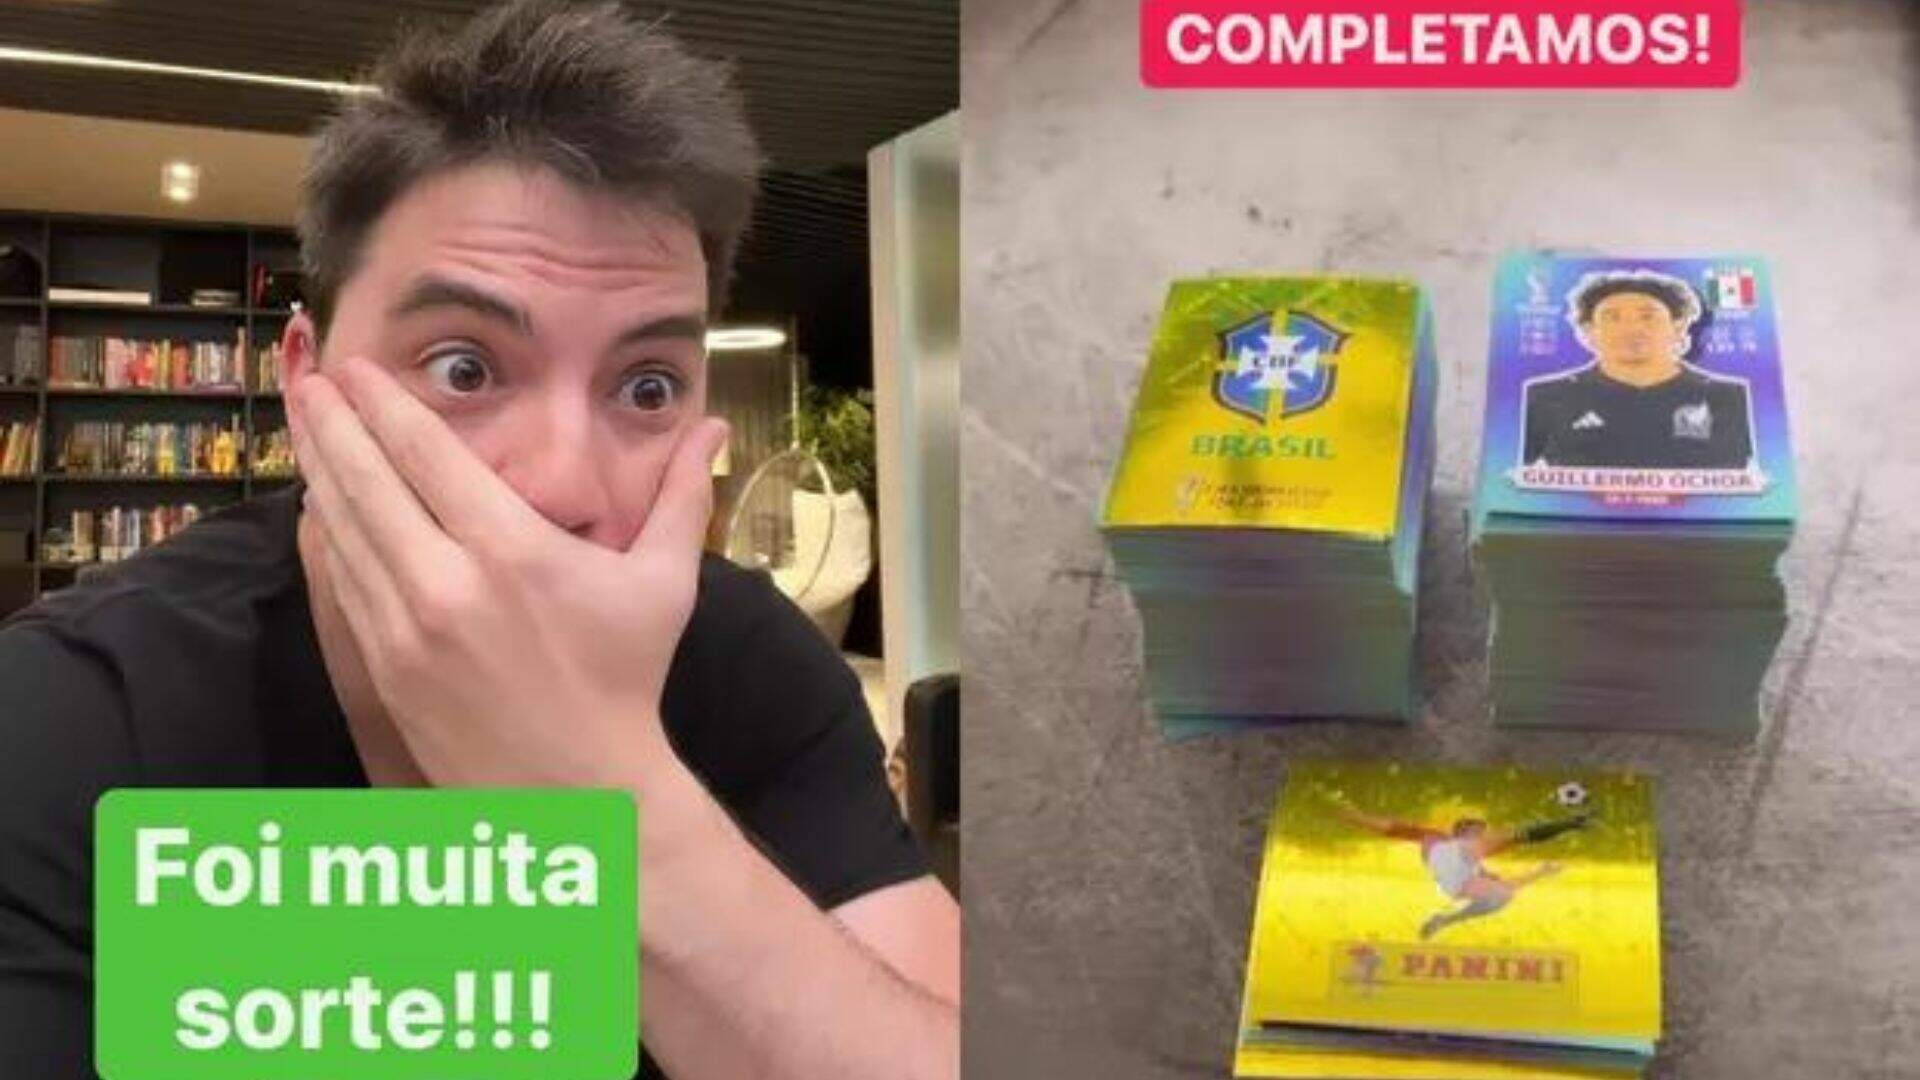 Felipe Neto revela ter gasto mil reais para completar o álbum da Copa do Mundo - Metropolitana FM